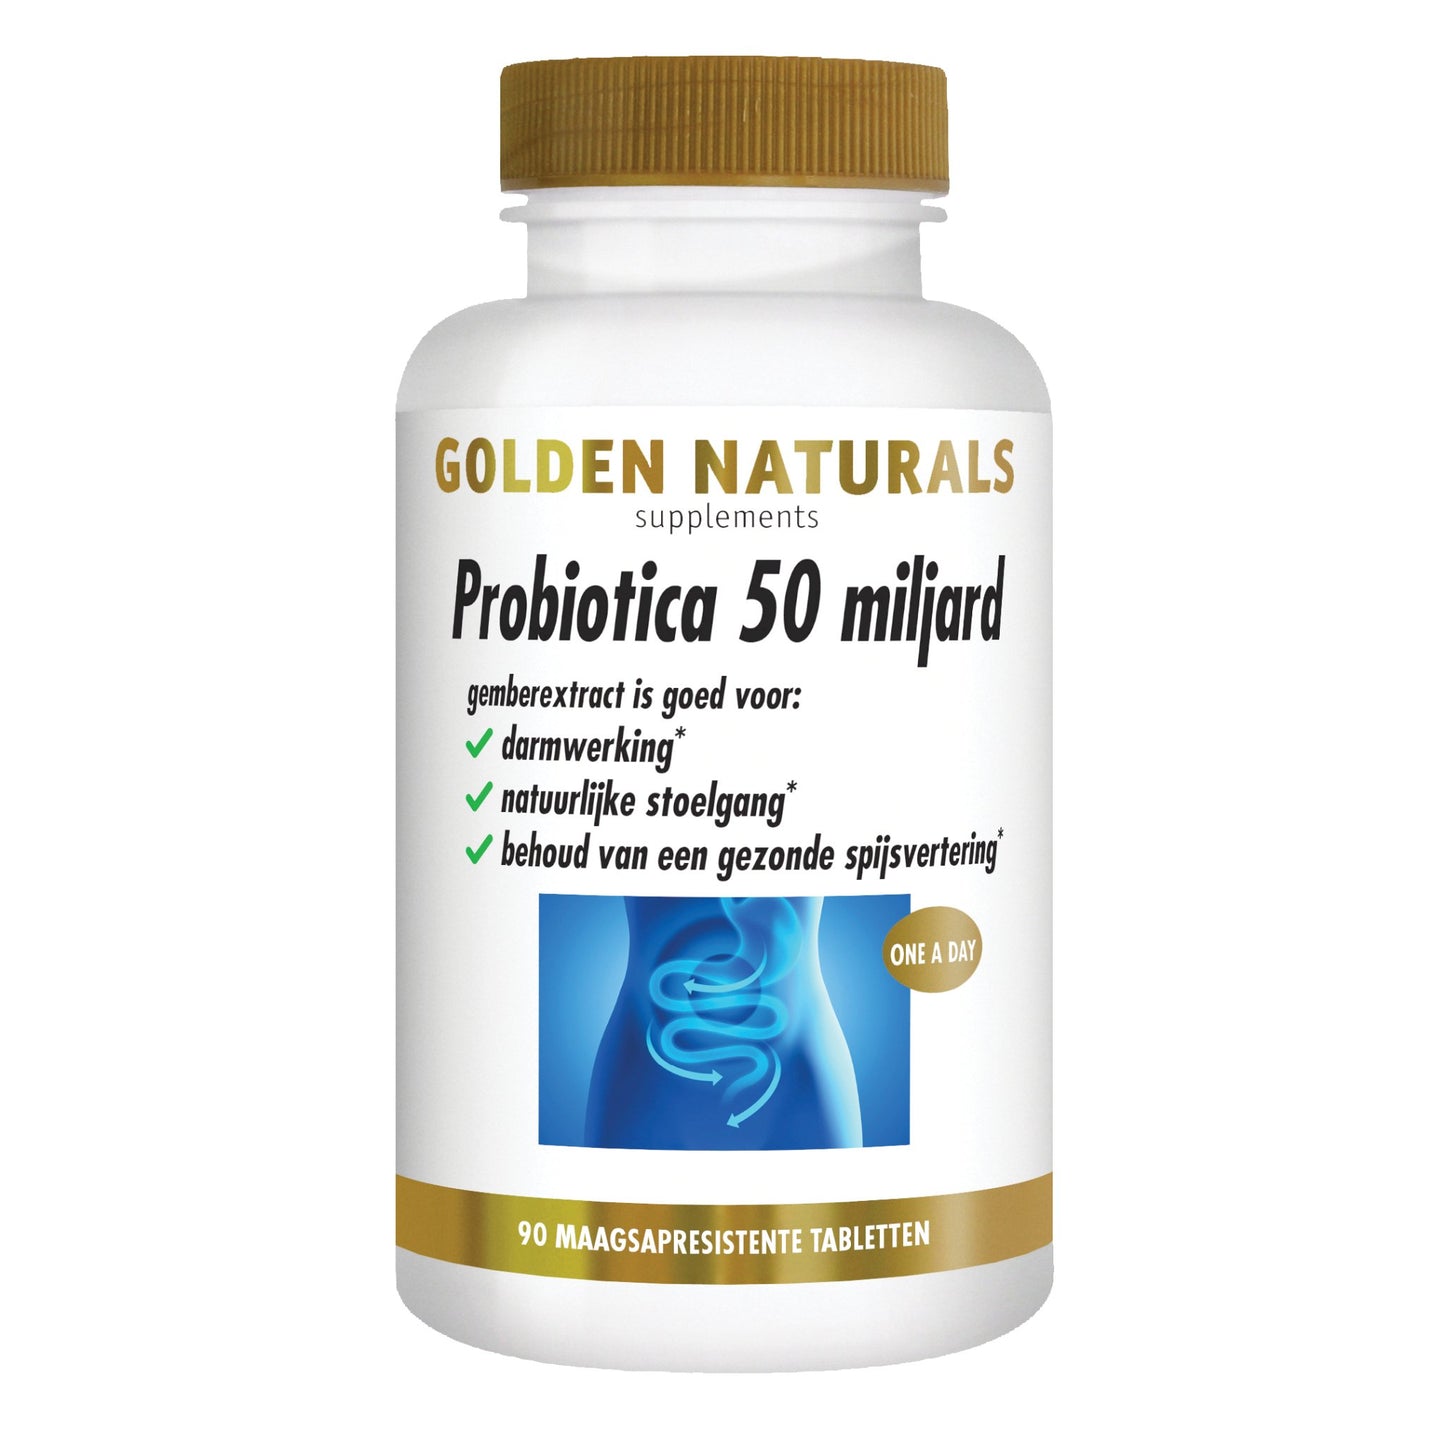 Probiotica 50 miljard - 90 - veganistische maagsapresistente capsules Supplement Golden Naturals   